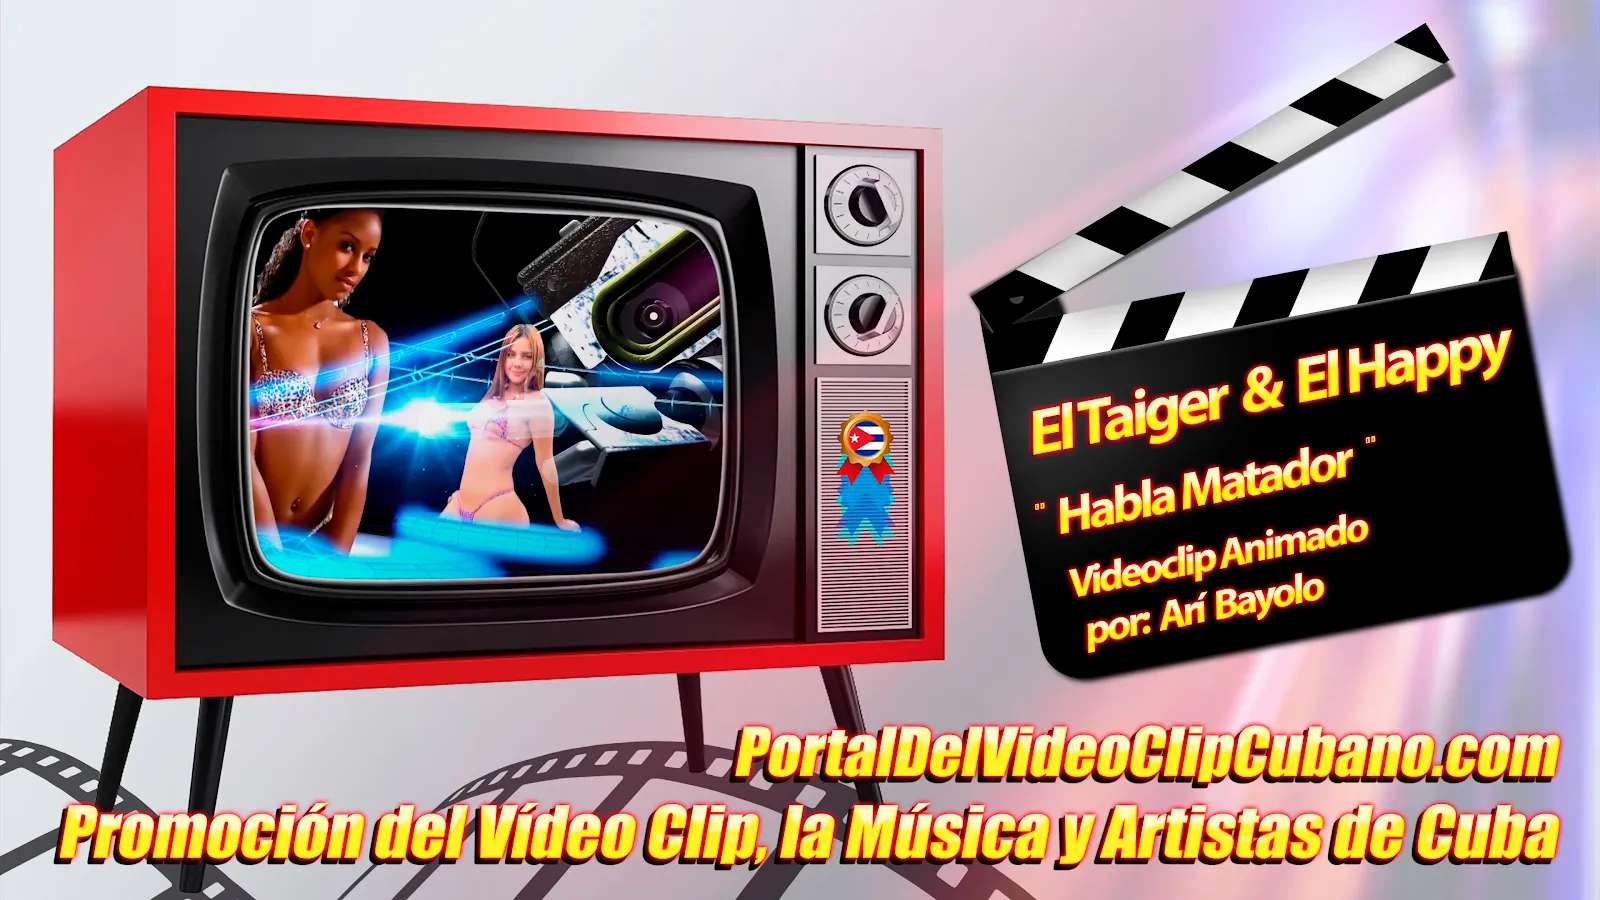 El Taiger & El Happy - ¨Habla Matador¨ - Videoclip Animado - Director: Arí Bayolo. Portal Del Vídeo Clip Cubano. Música Urbana Cubana. CUBA.